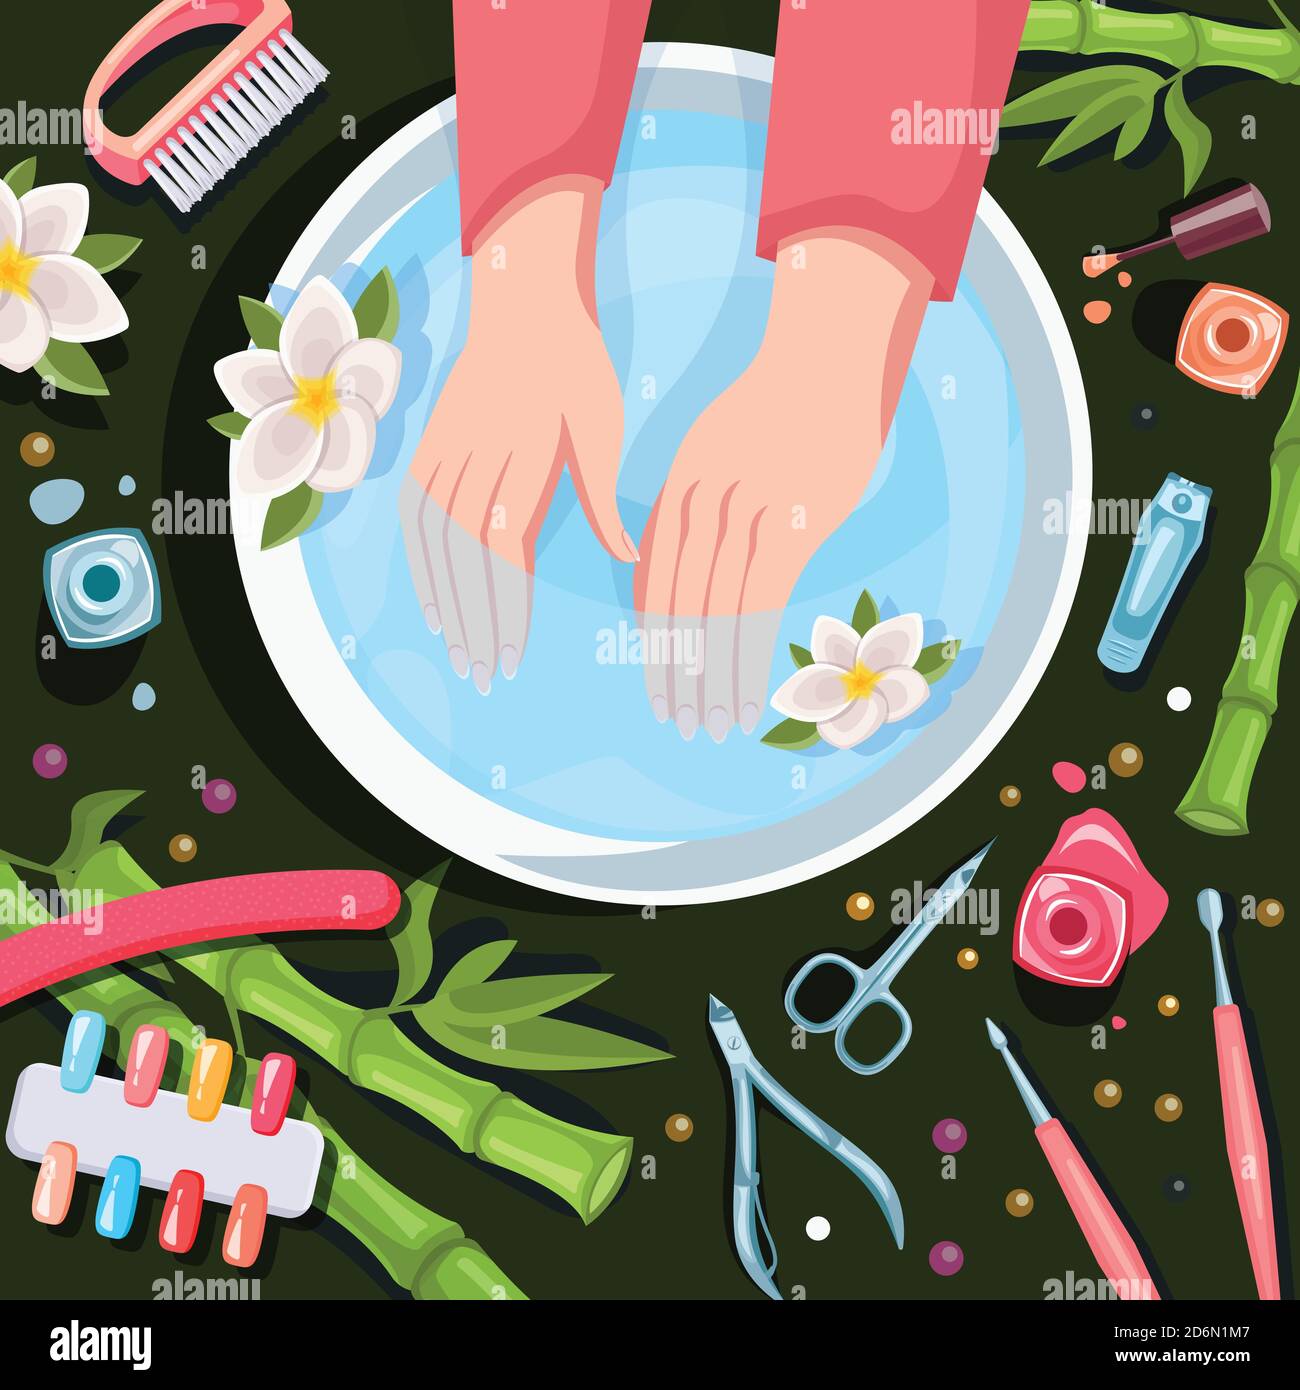 Mani femminili in ciotola con acqua pulita, vista dall'alto cartoni animati vettoriali. Trattamenti termali, manicure e relax. Salone di bellezza cura mani e unghie. Illustrazione Vettoriale